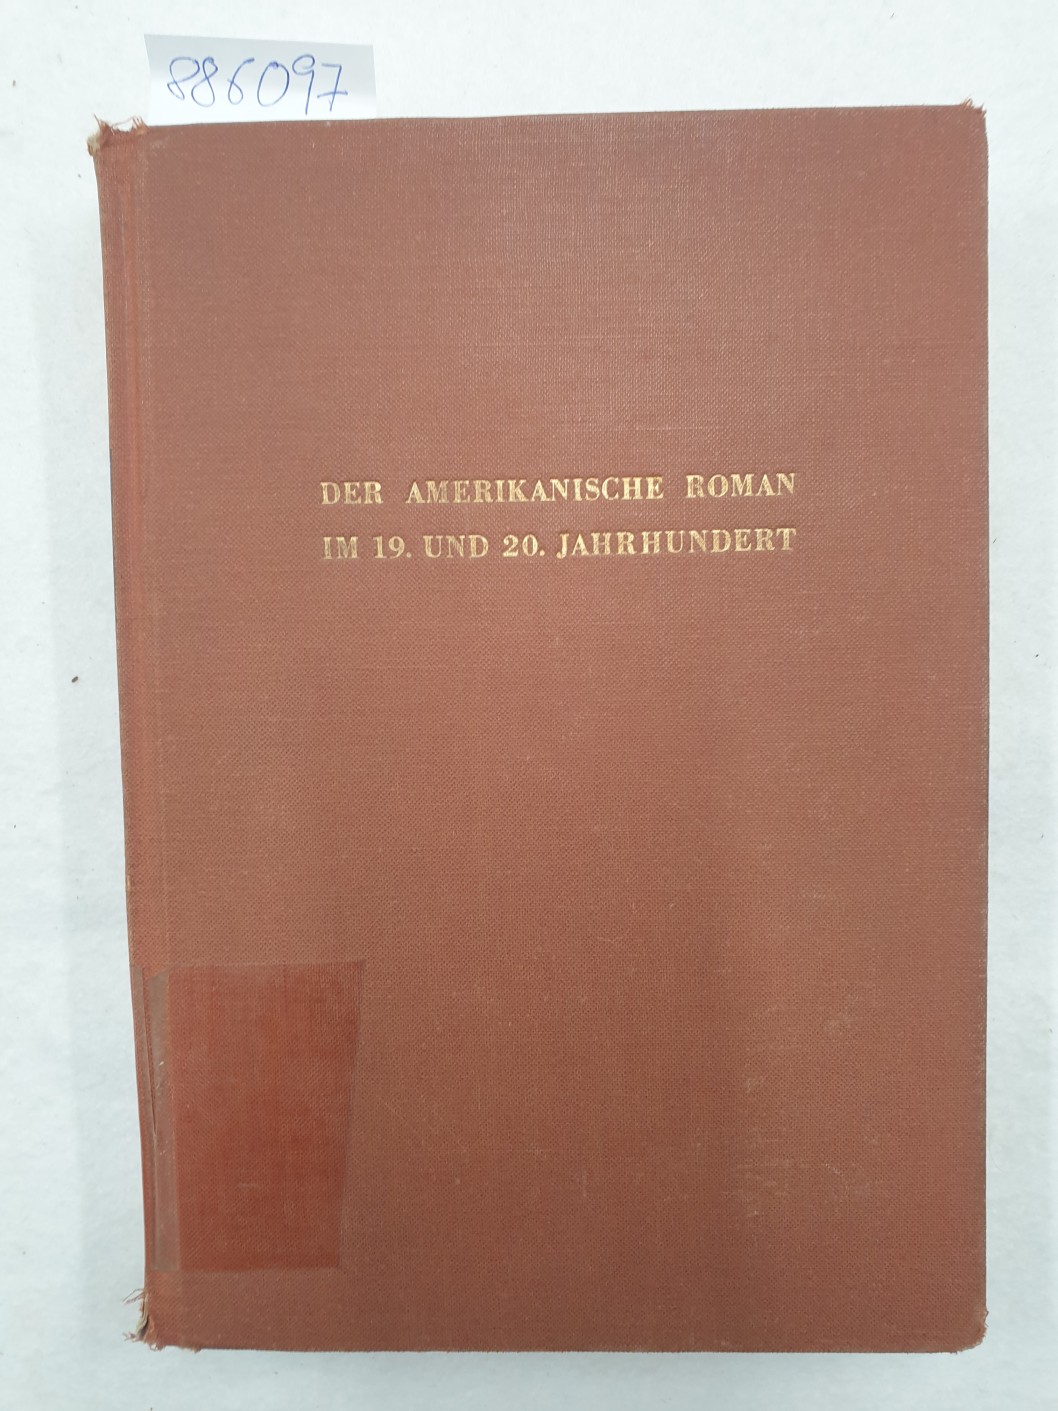 Der amerikanische Roman im 19. und 20. Jahrhundert : Interpretationen. unter Mitw. zahlr. Fachgelehrter hrsg. von Edgar Lohner - Lohner, Edgar